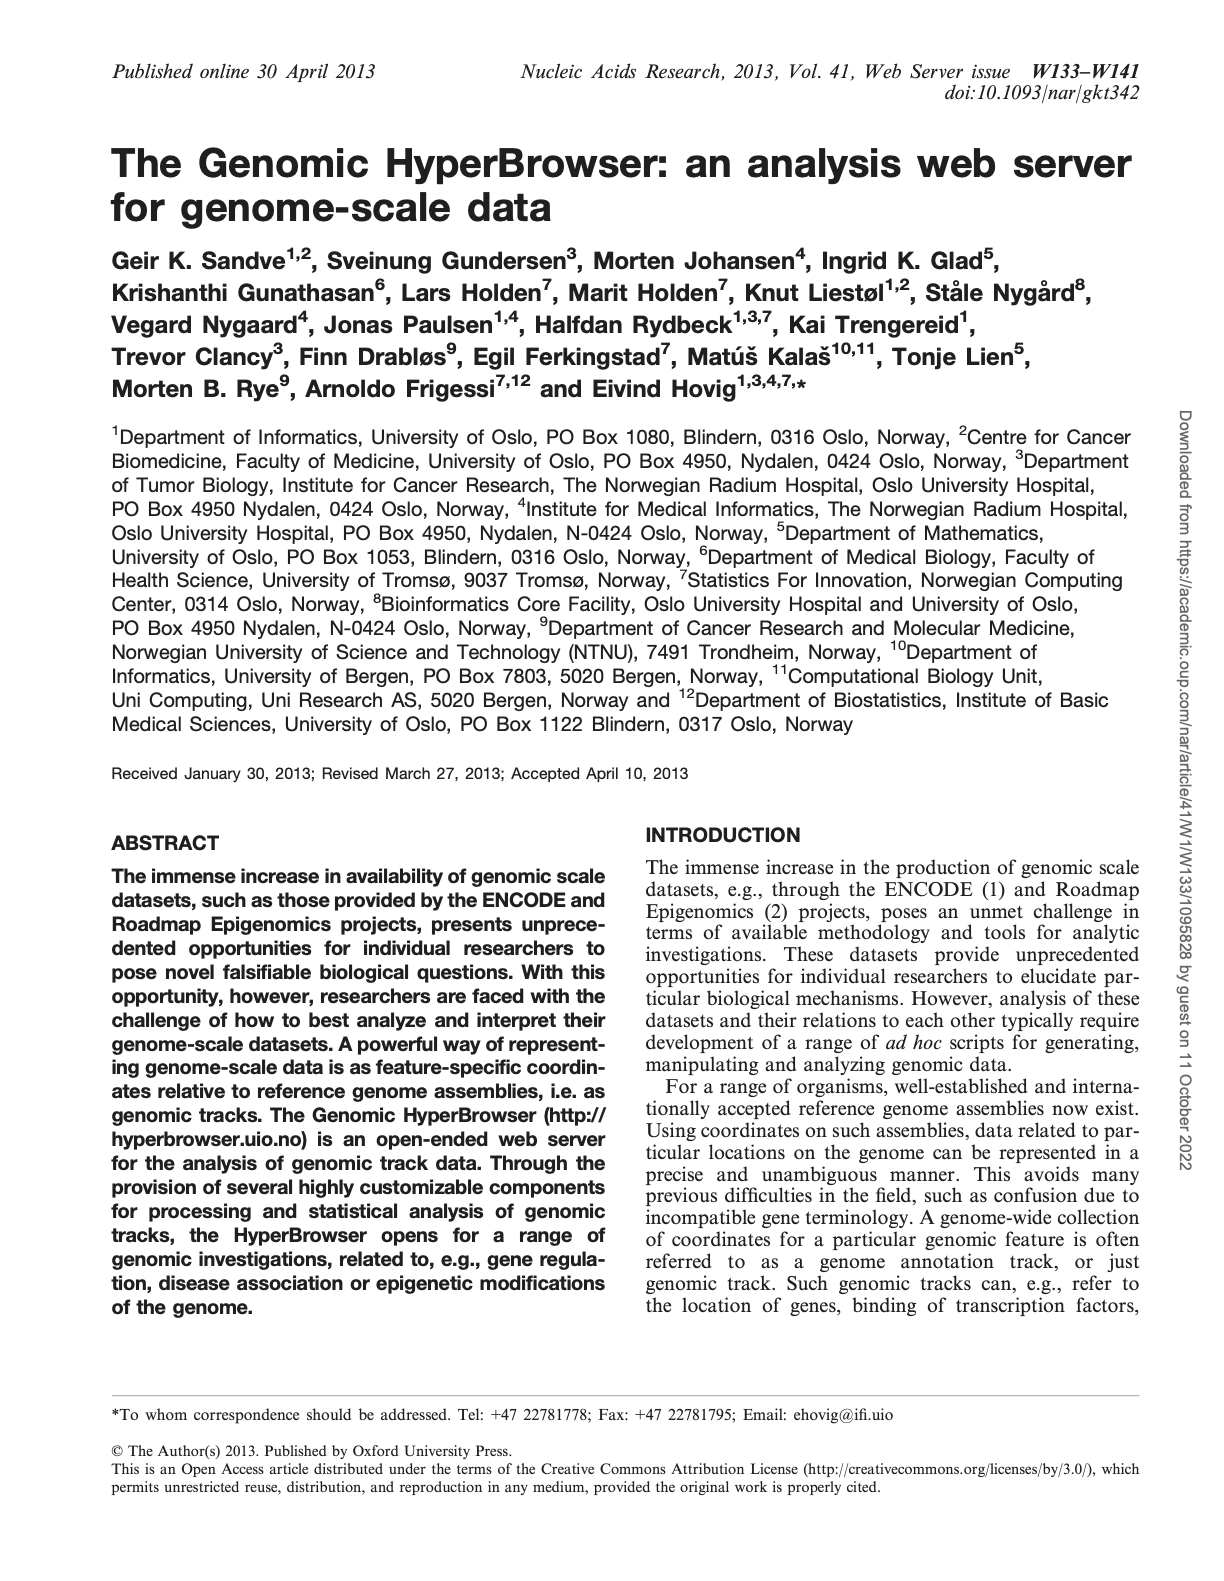 sandve_genomic-hyperBrowser_2013.png